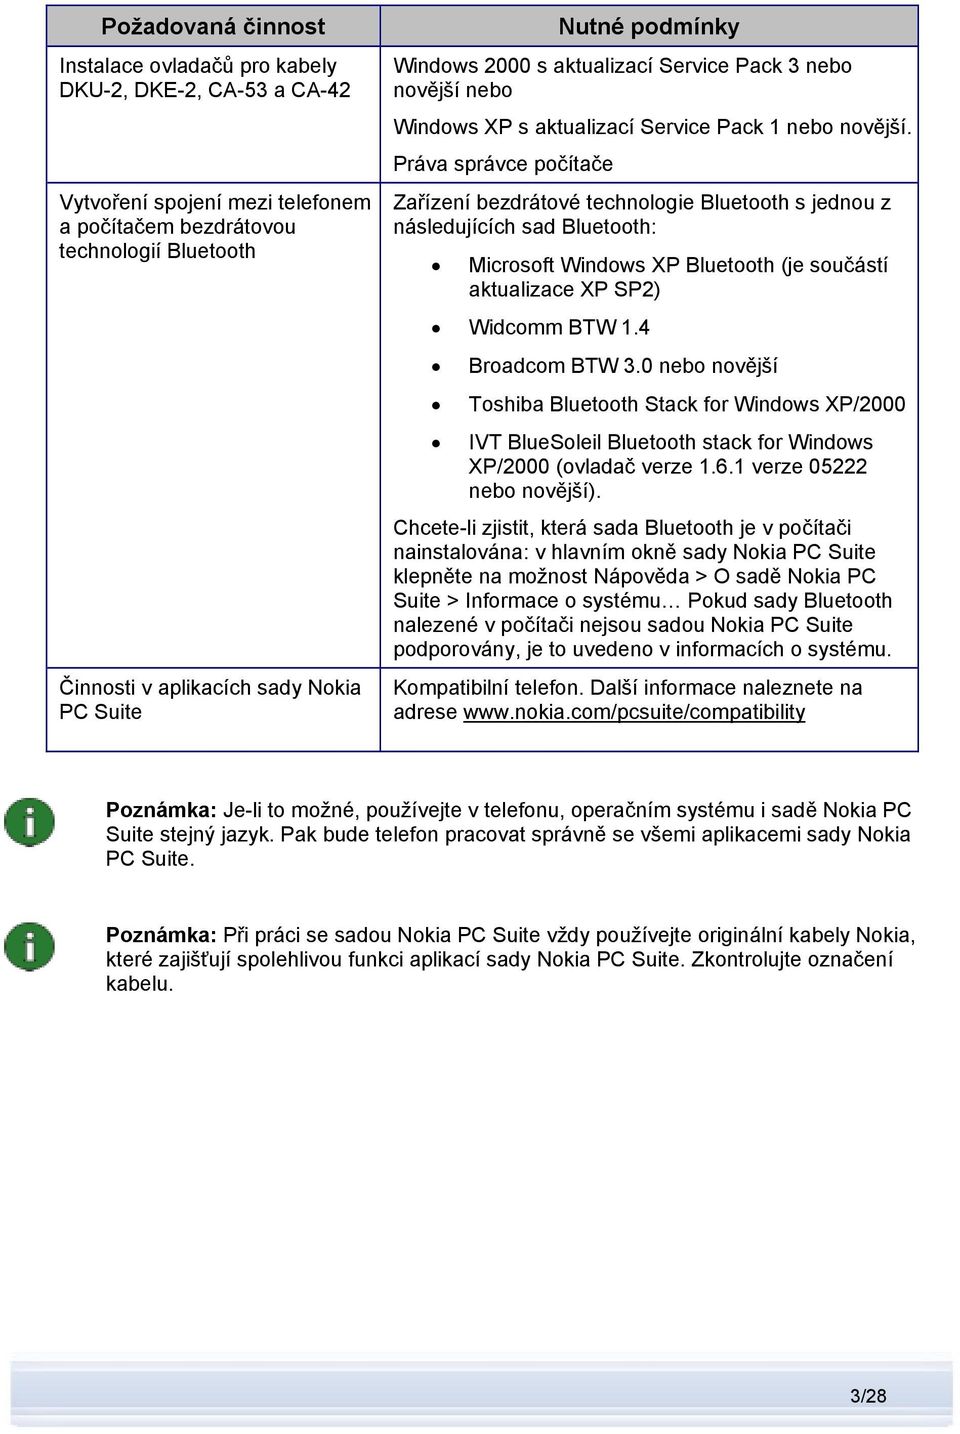 Práva správce počítače Zařízení bezdrátové technologie Bluetooth s jednou z následujících sad Bluetooth: Microsoft Windows XP Bluetooth (je součástí aktualizace XP SP2) Widcomm BTW 1.4 Broadcom BTW 3.